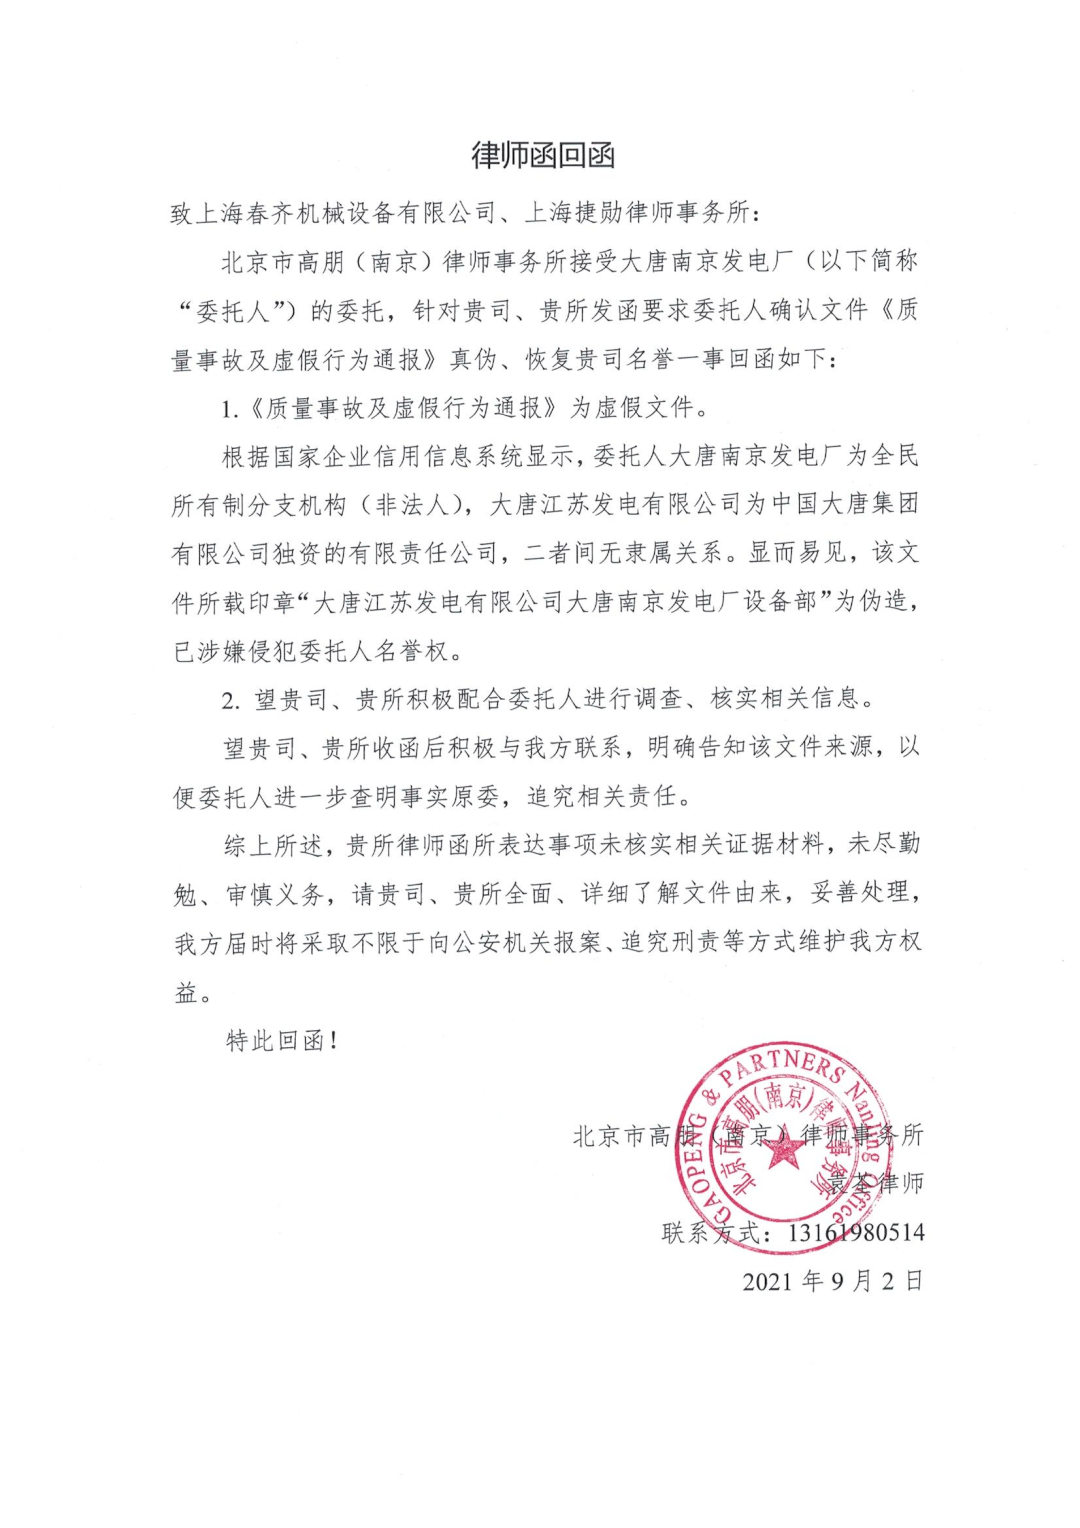 上海春齐机械设备有限公司关于质量事故及虚假行为通报澄清声明函